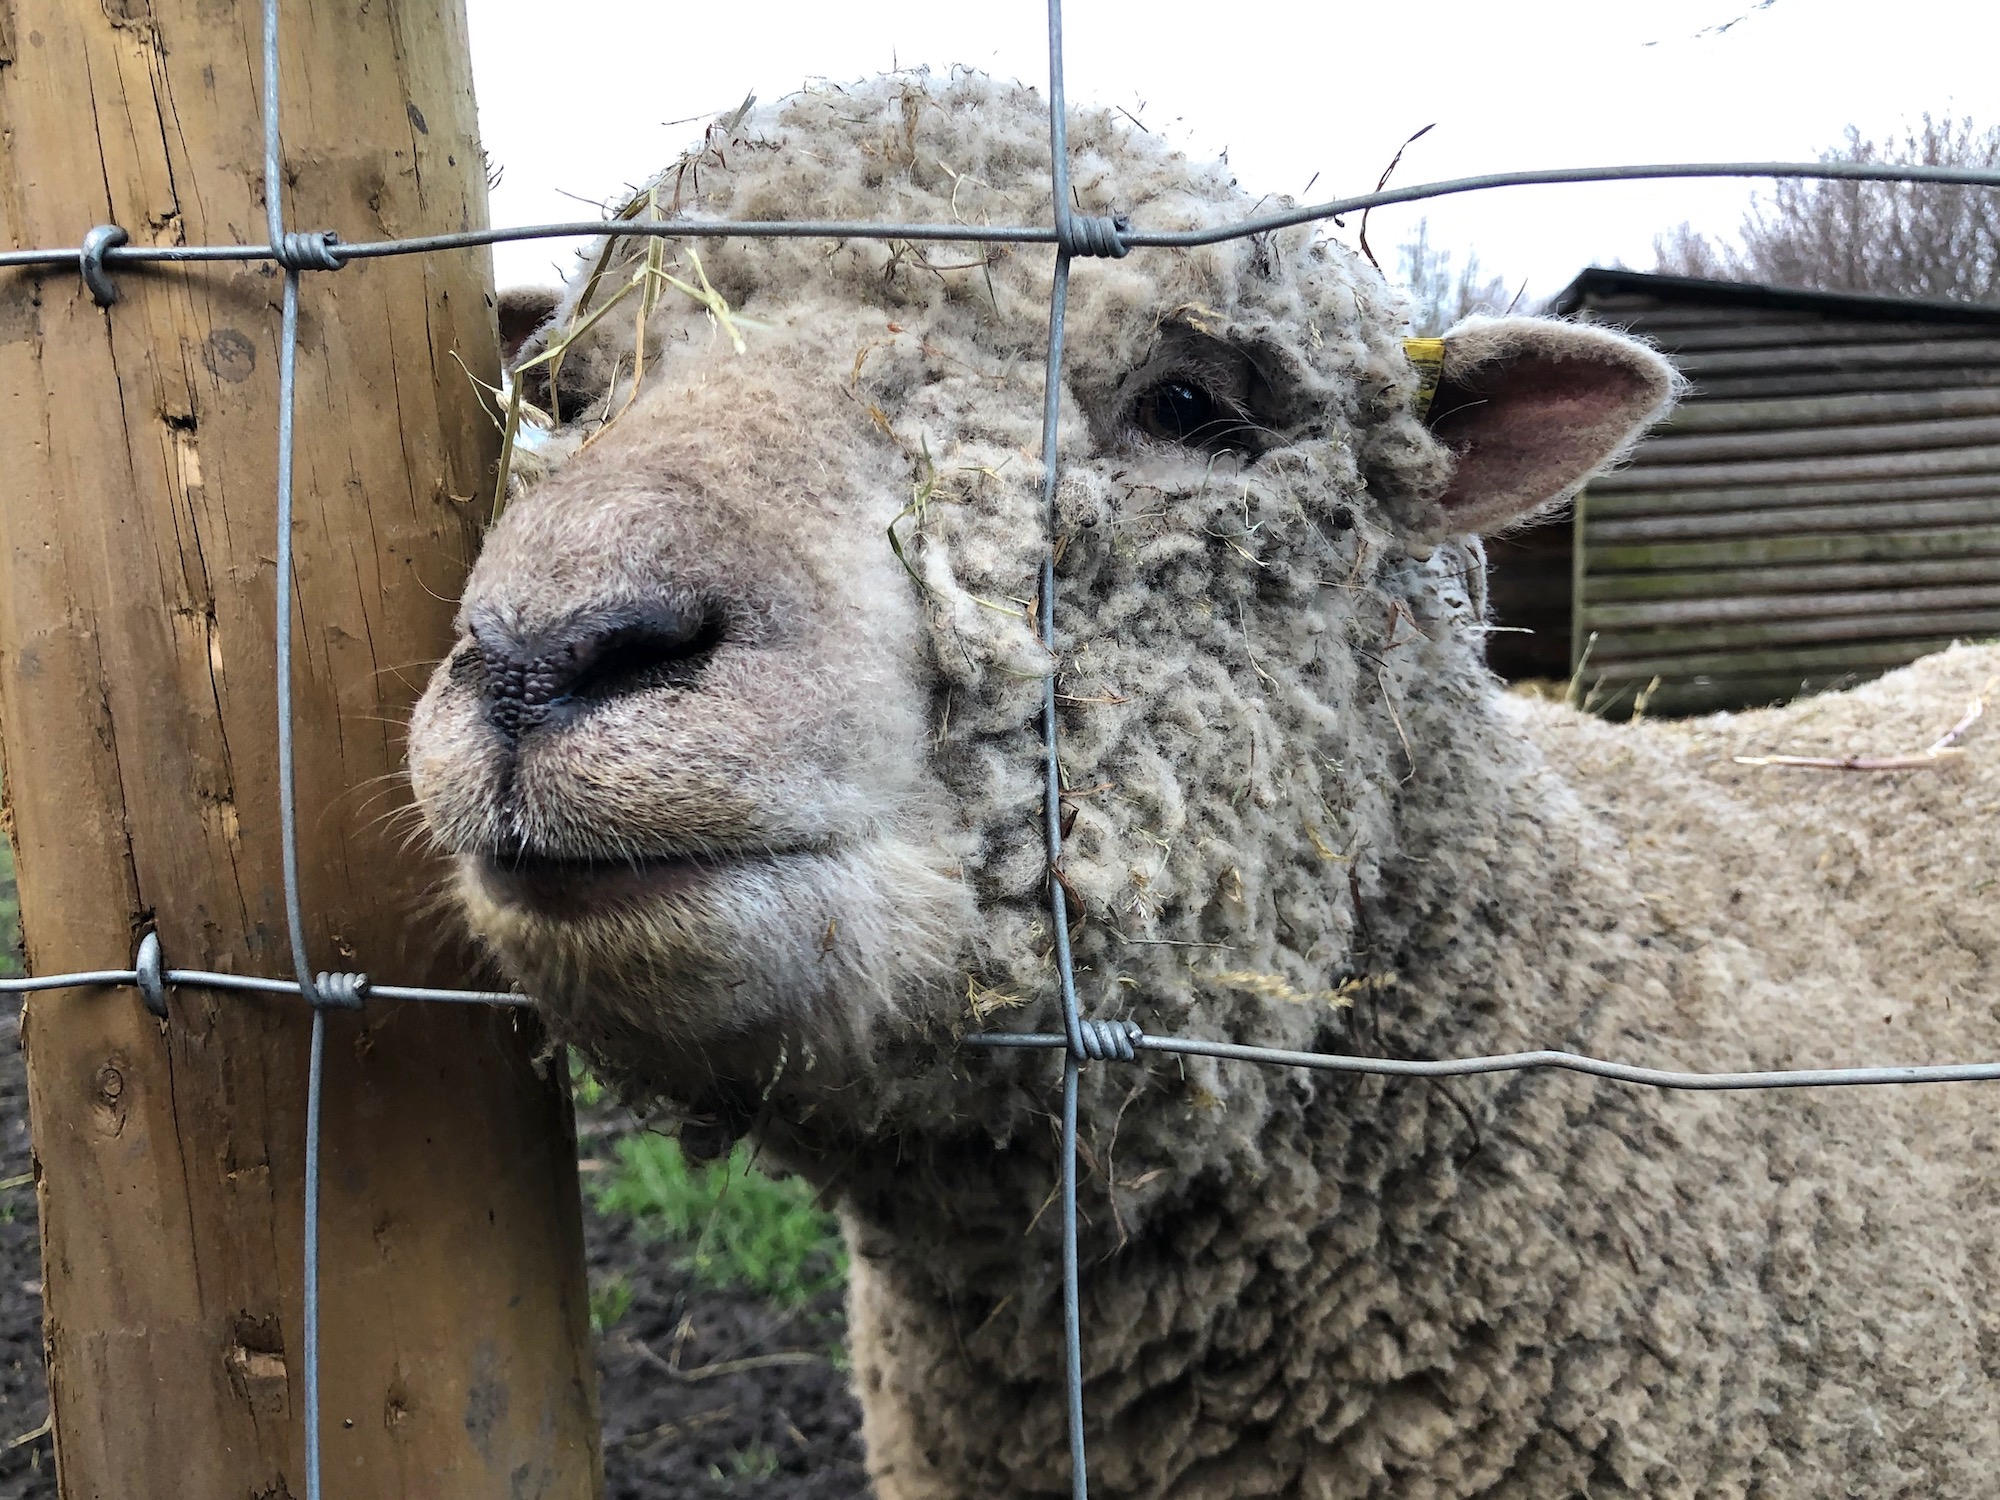 Southdown Sheep up close at Mudchute Farm